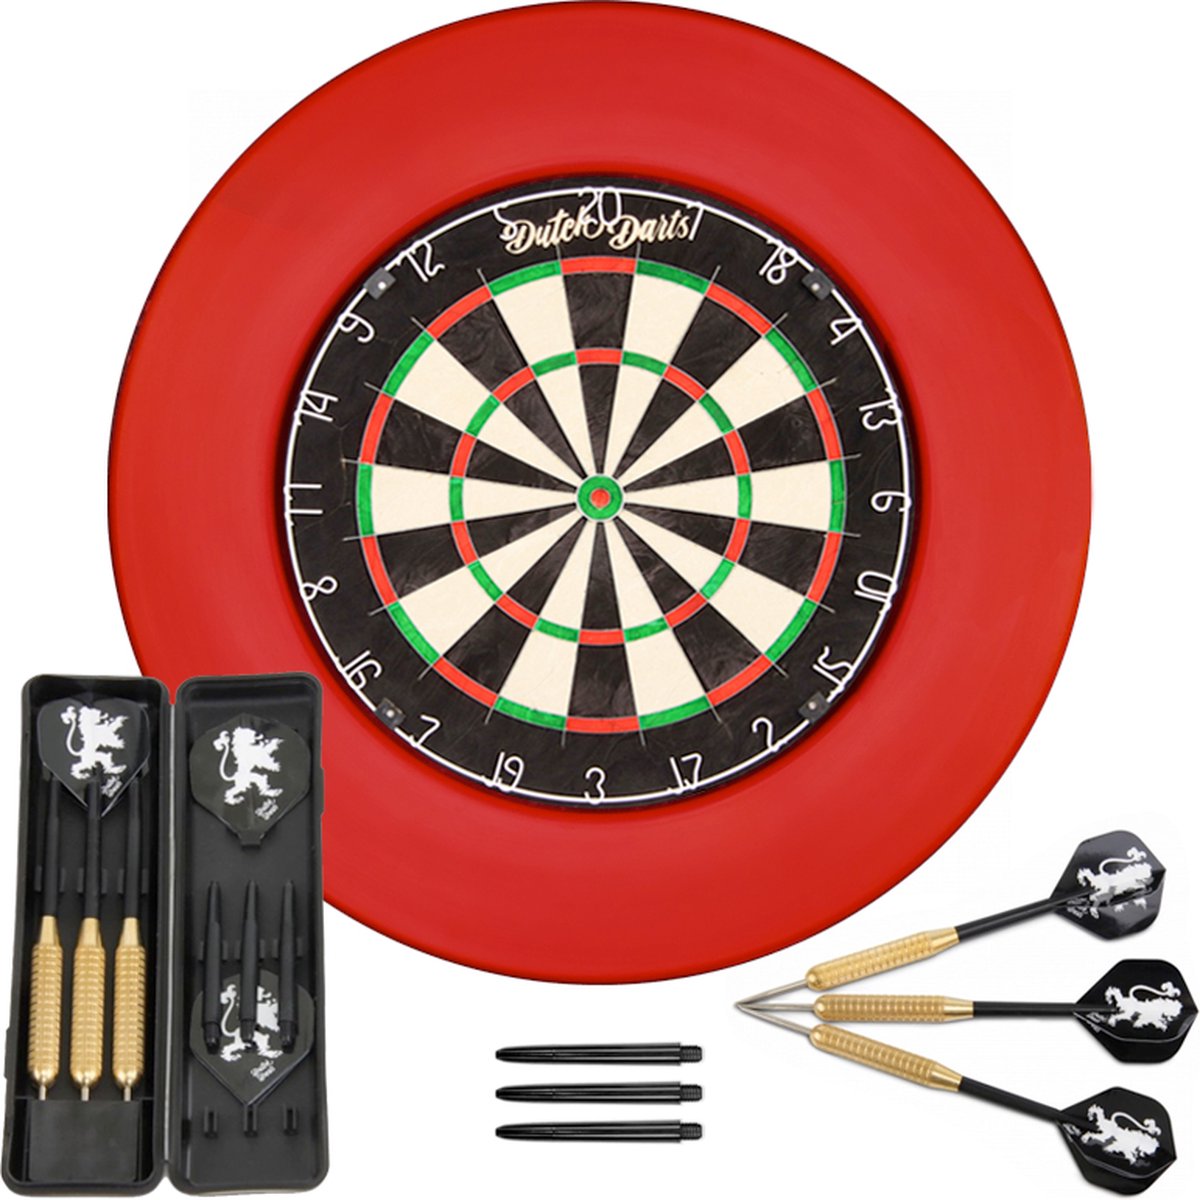 Dutch Darts Dartset met Thinwire dartbord, rode surround en een setje  dartpijlen | bol